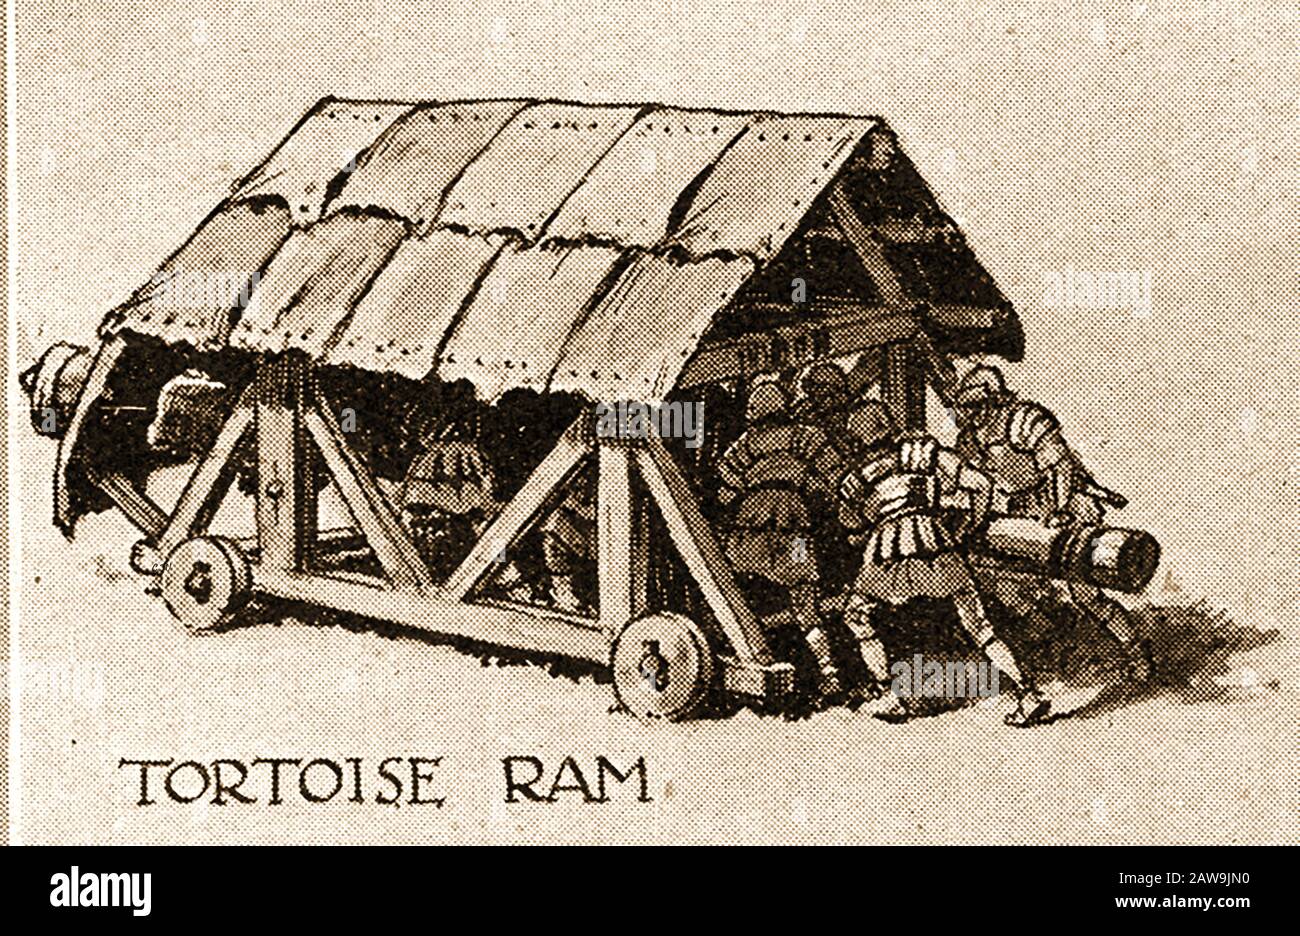 Un'illustrazione degli anni '40 che mostra le armi storiche di battaglia - Ram Tartaruga. E 'stato progettato per rompere le mura aperte o fortificazioni e per distruggere le porte di legno. Foto Stock